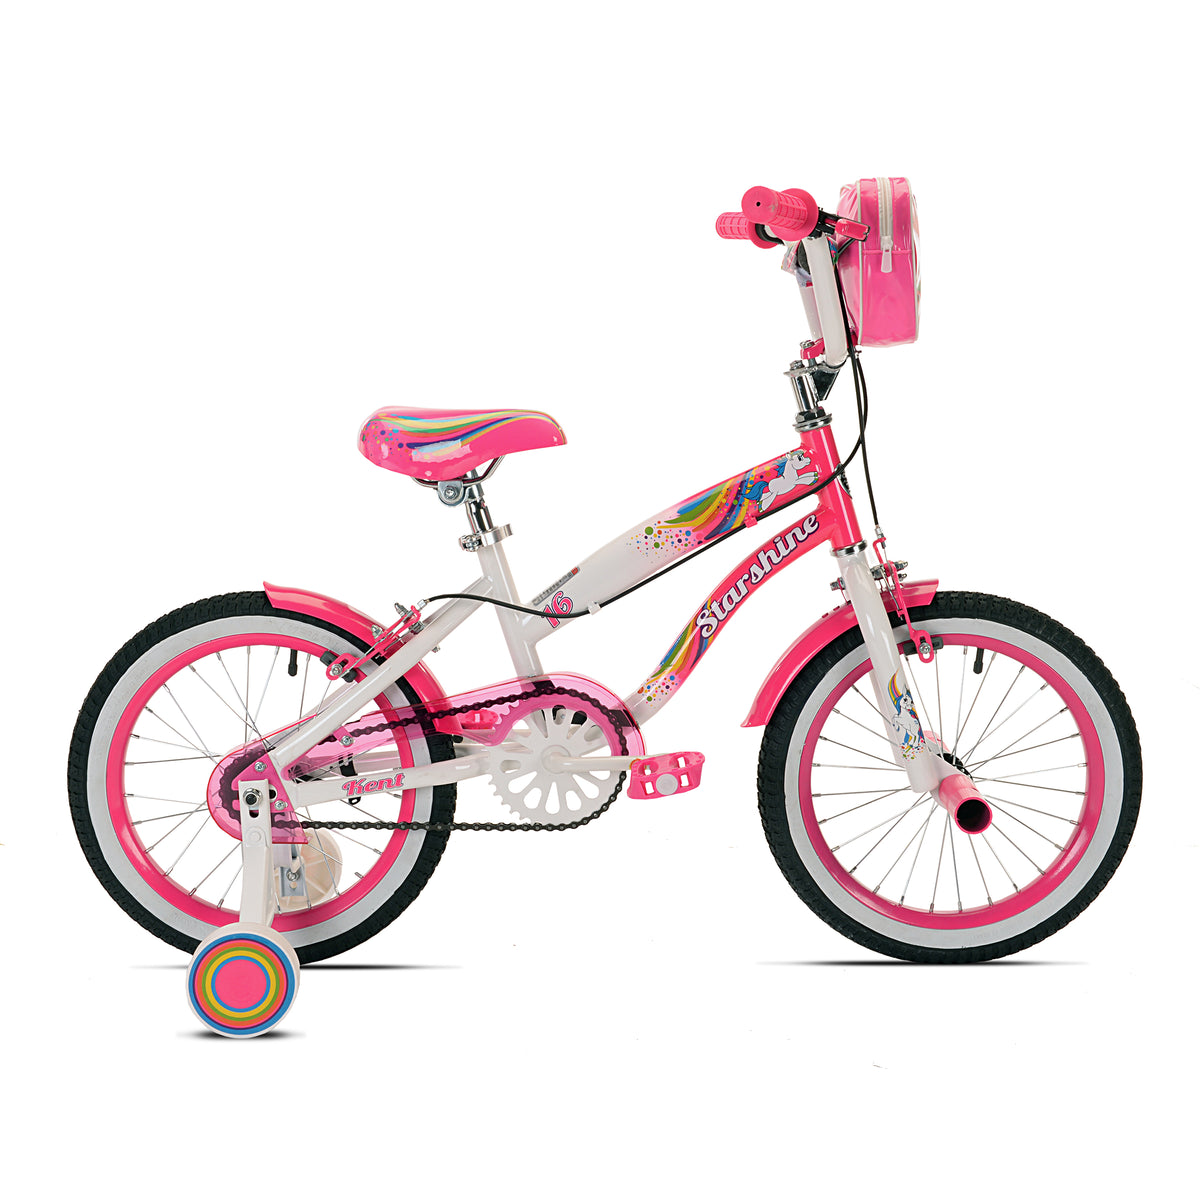 16" Kent Starshine | Cruiser Bike for Kids Ages 4-6